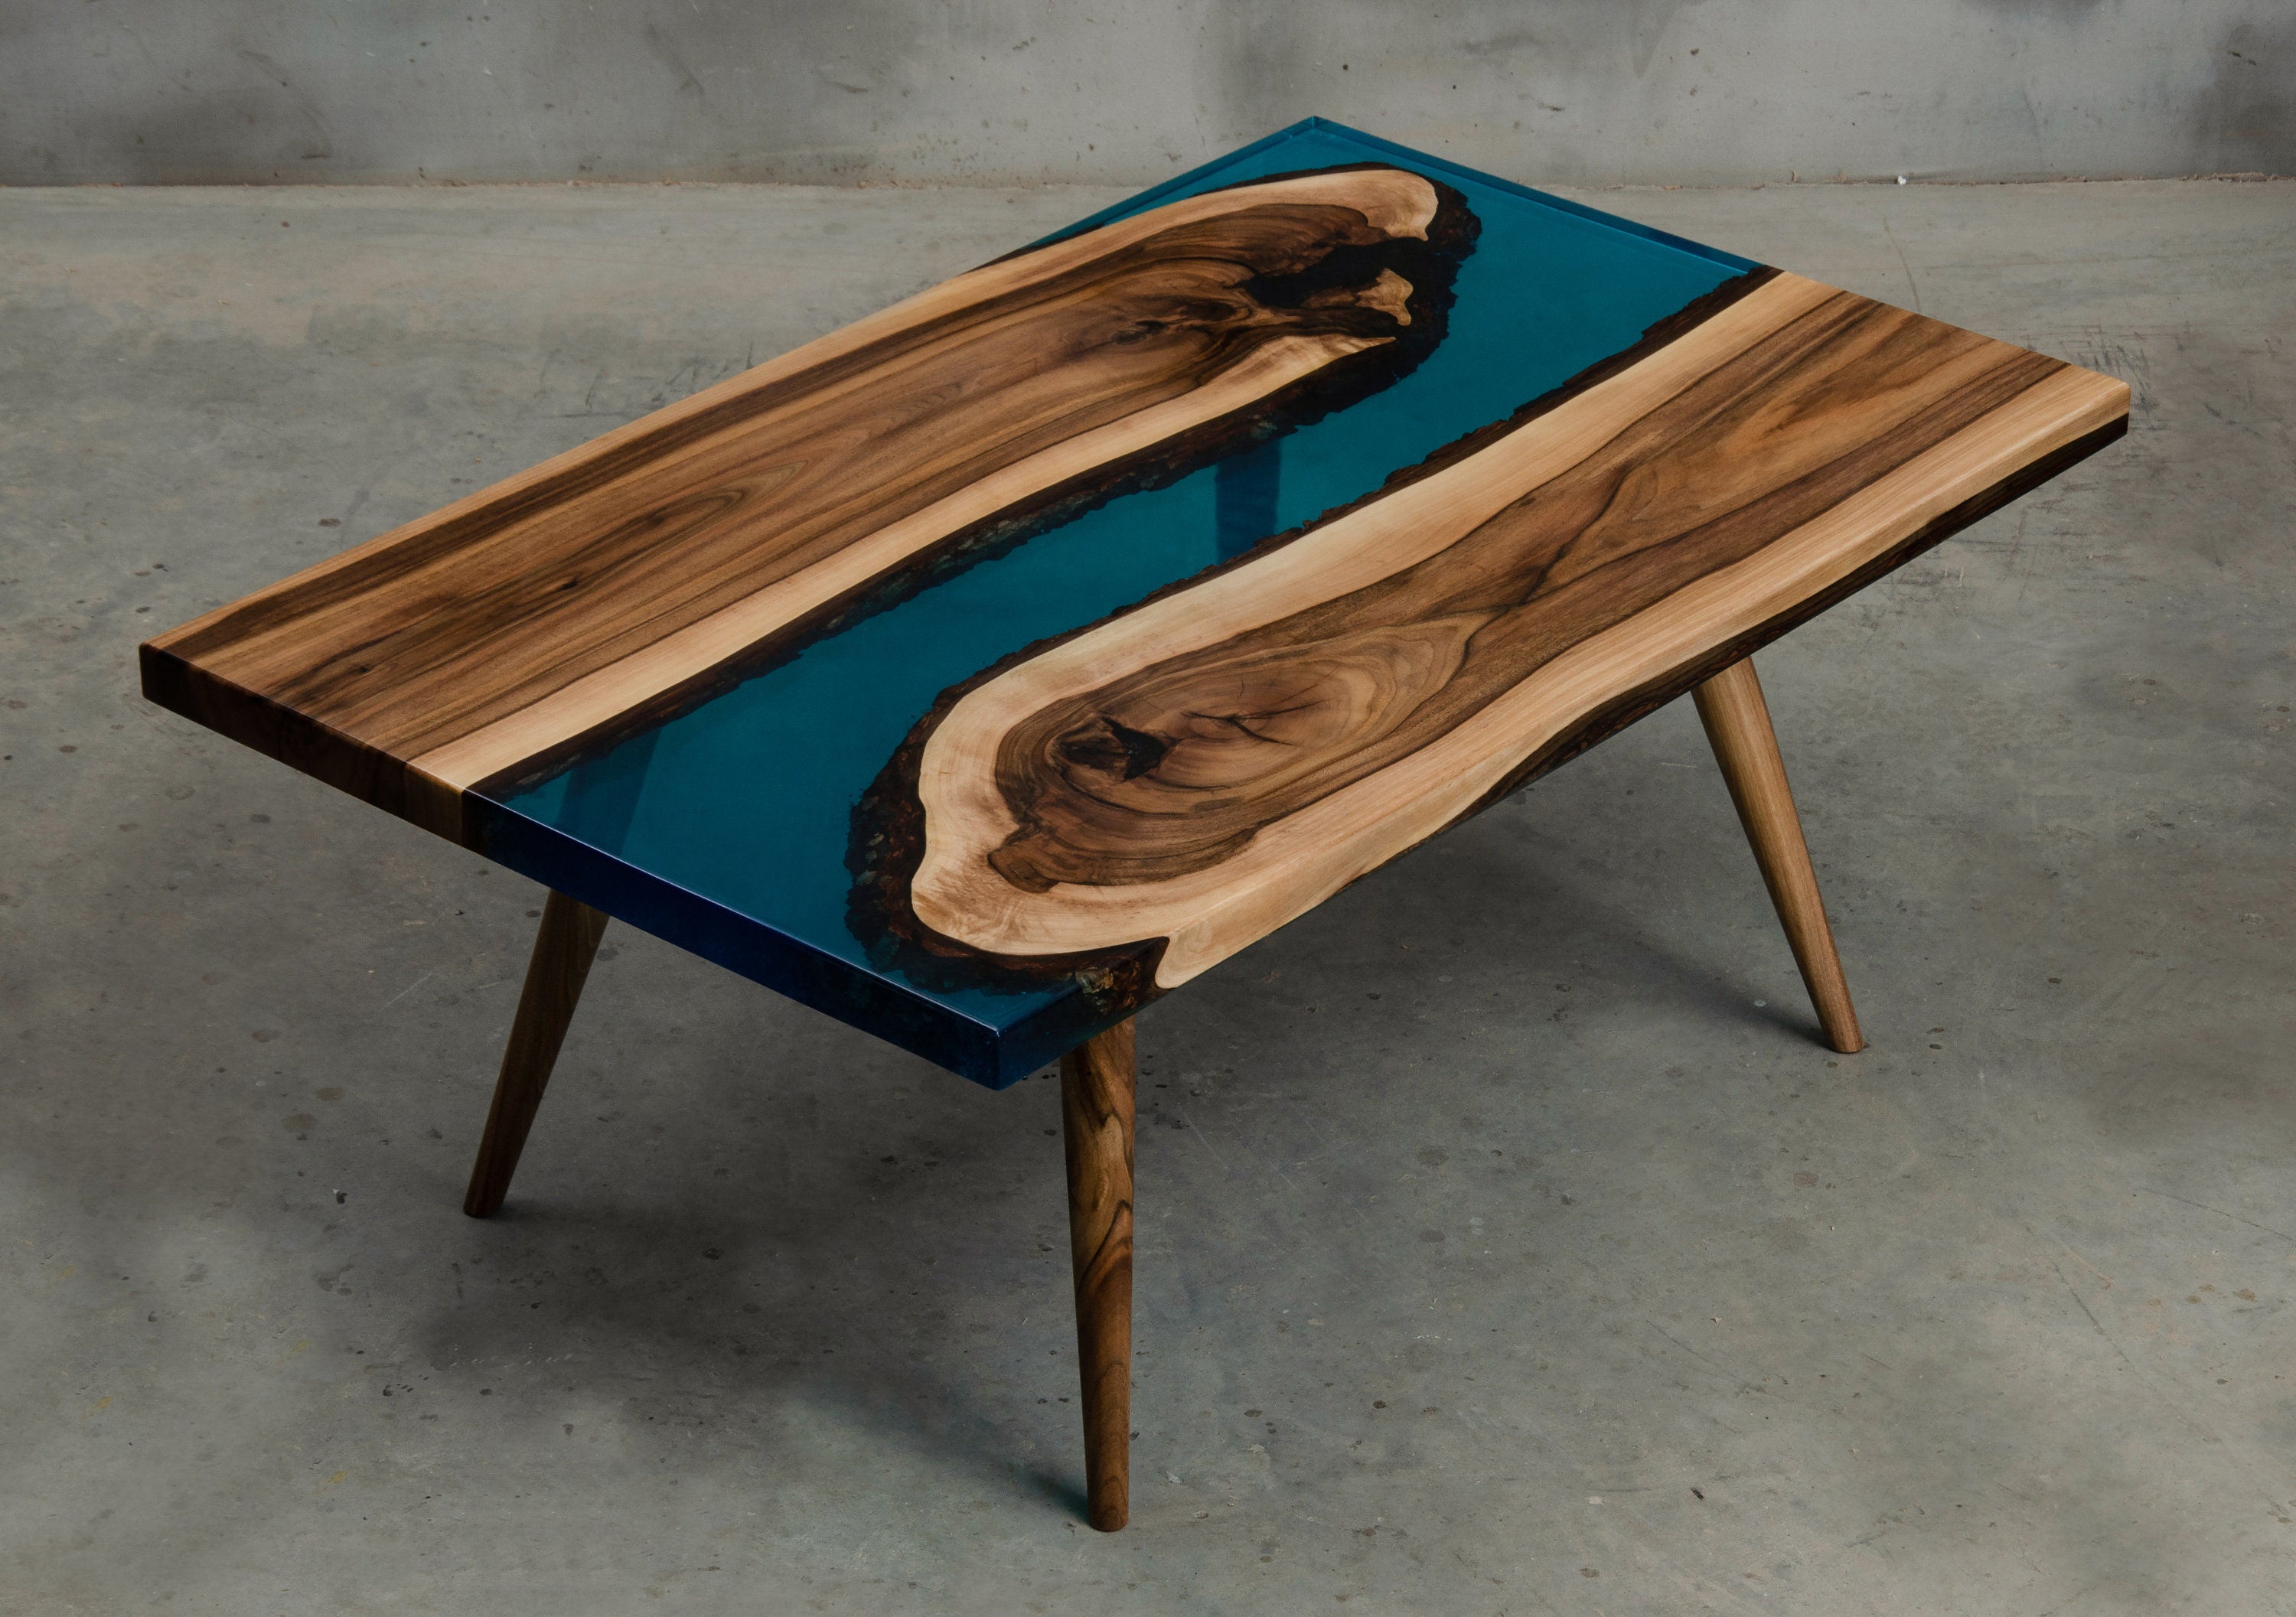 Canto en vivo de Resina Epoxi mesa de madera y muebles de madera